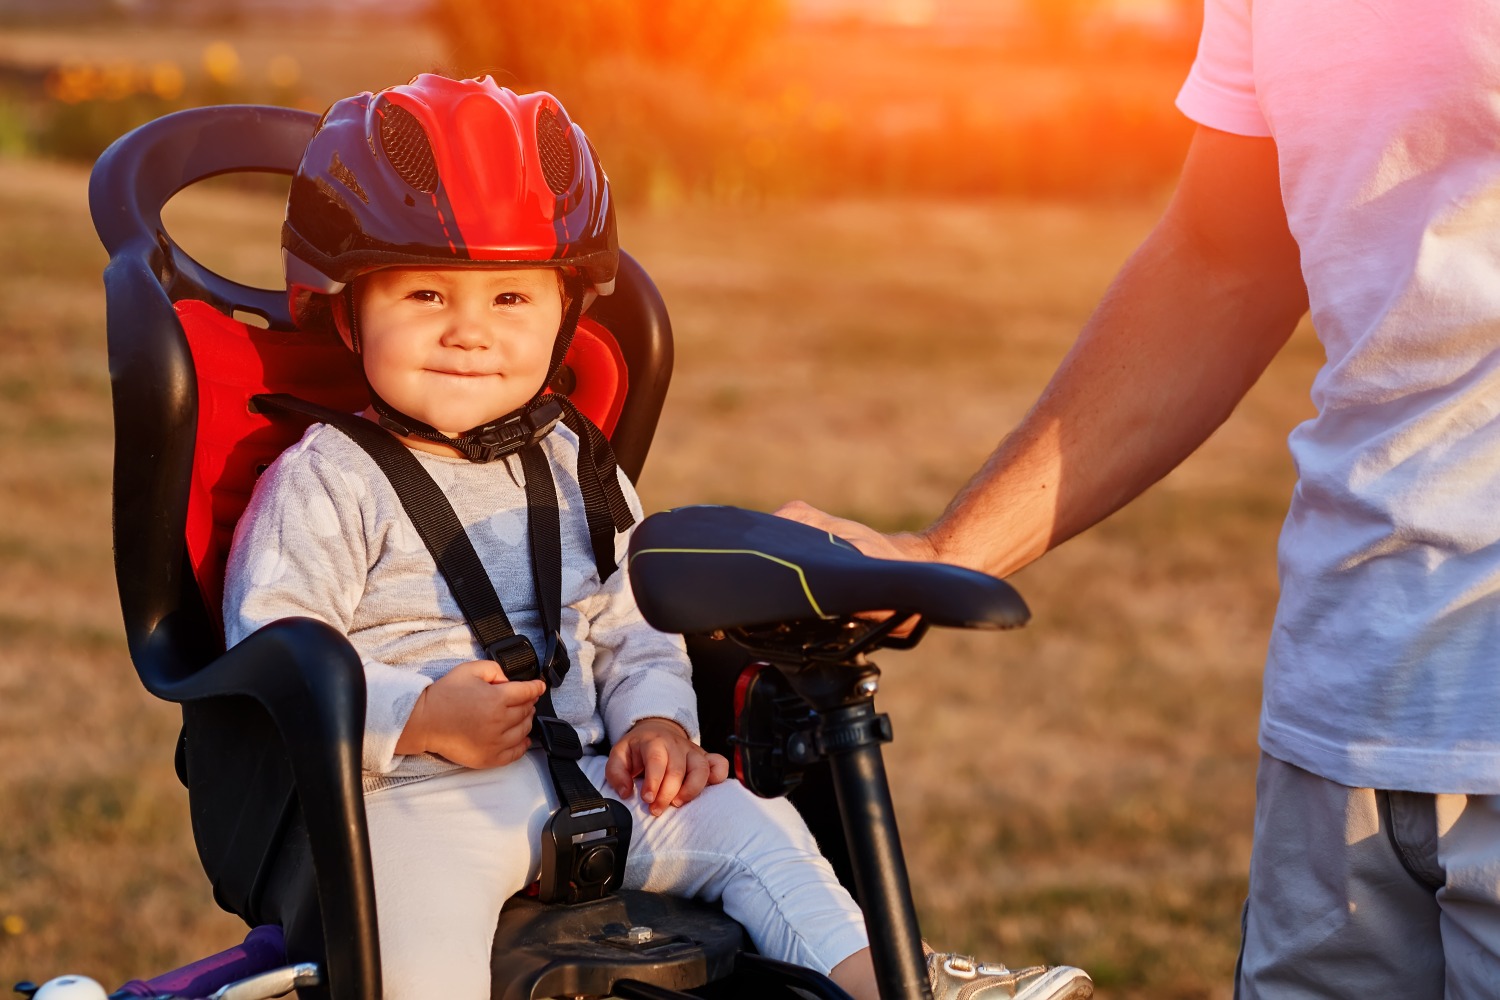 A toddler wearing a bike helmet, in a rear bike seat, smiling